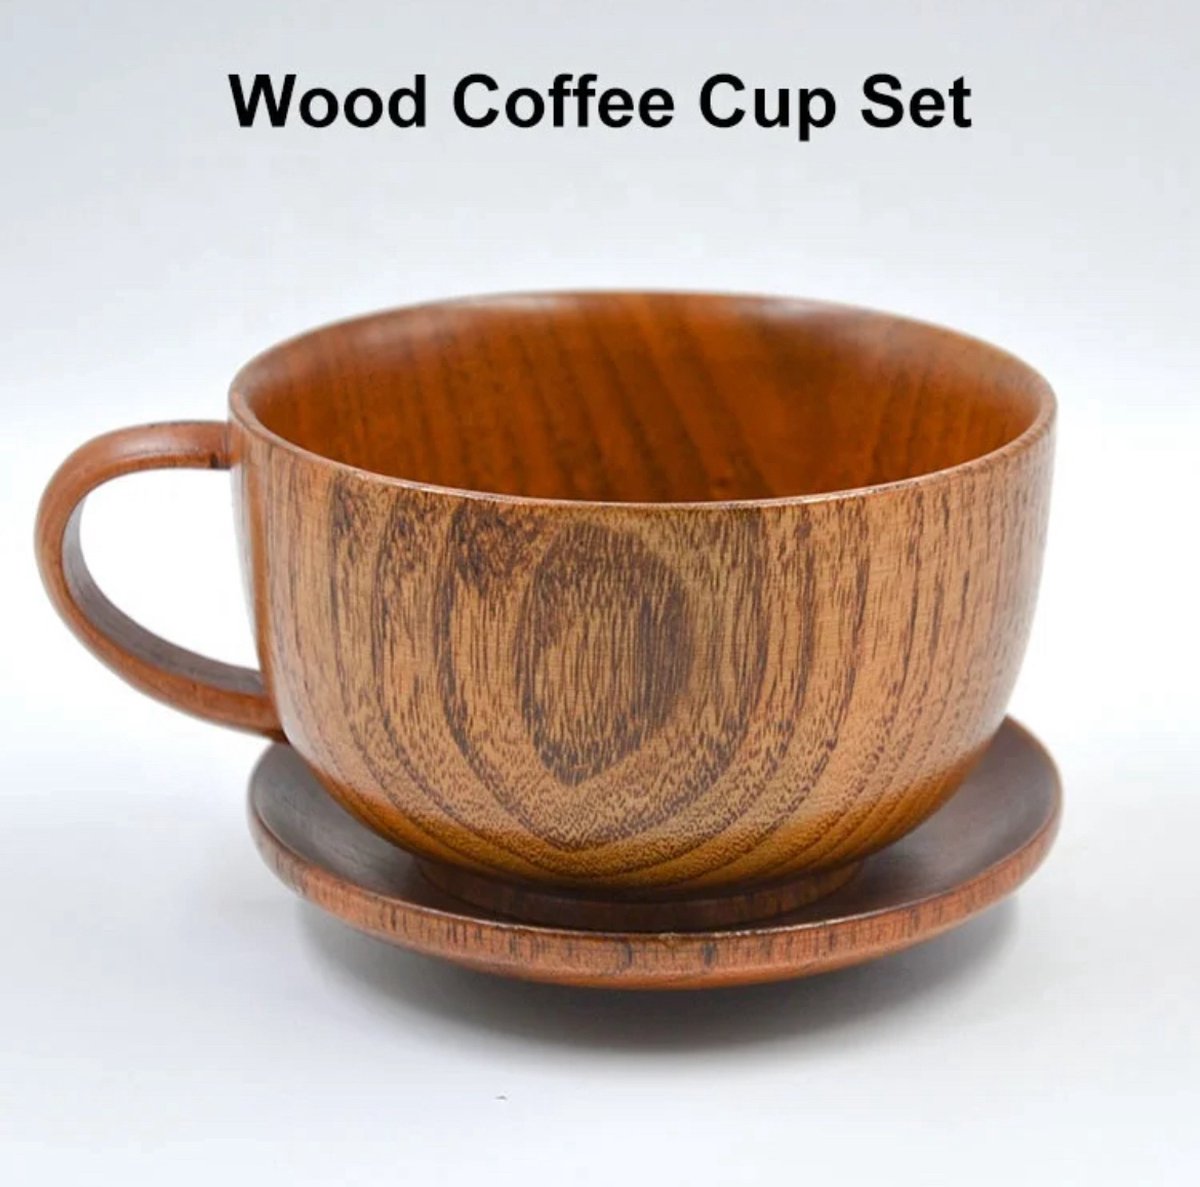 6-delige set houten kop met schotel en lepel- set koffie thee, soep, gereedschap accessoires - kop en schotel set, kleur: bruin, eiken, Authentieke Smaak